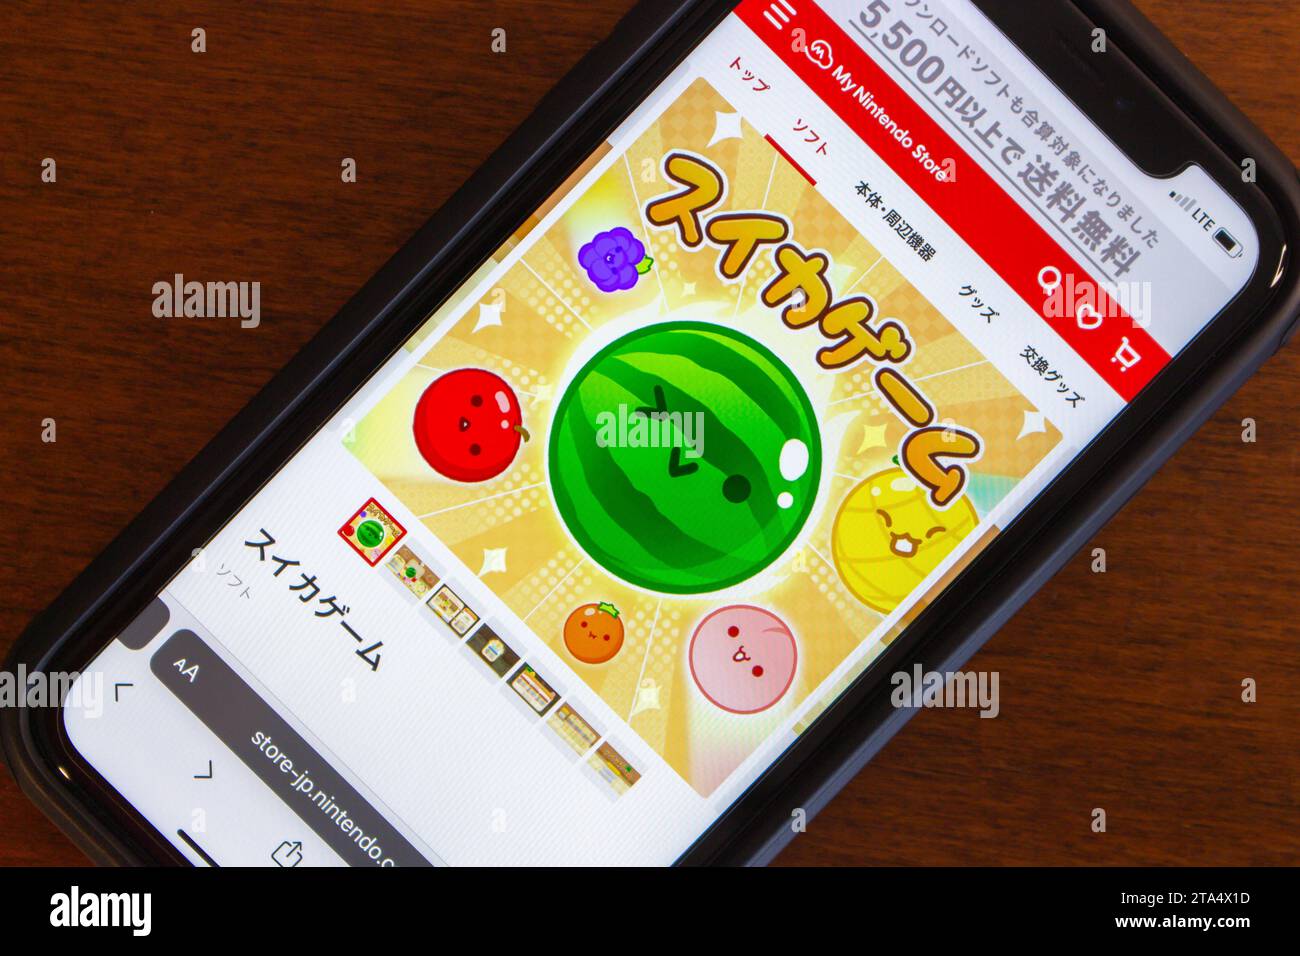 Suika Game (auch bekannt als Watermelon Game), ein japanisches Puzzle-Videospiel, das von Aladdin X entwickelt und veröffentlicht wurde und im Nintendo Store auf dem iPhone-Bildschirm zu sehen ist Stockfoto